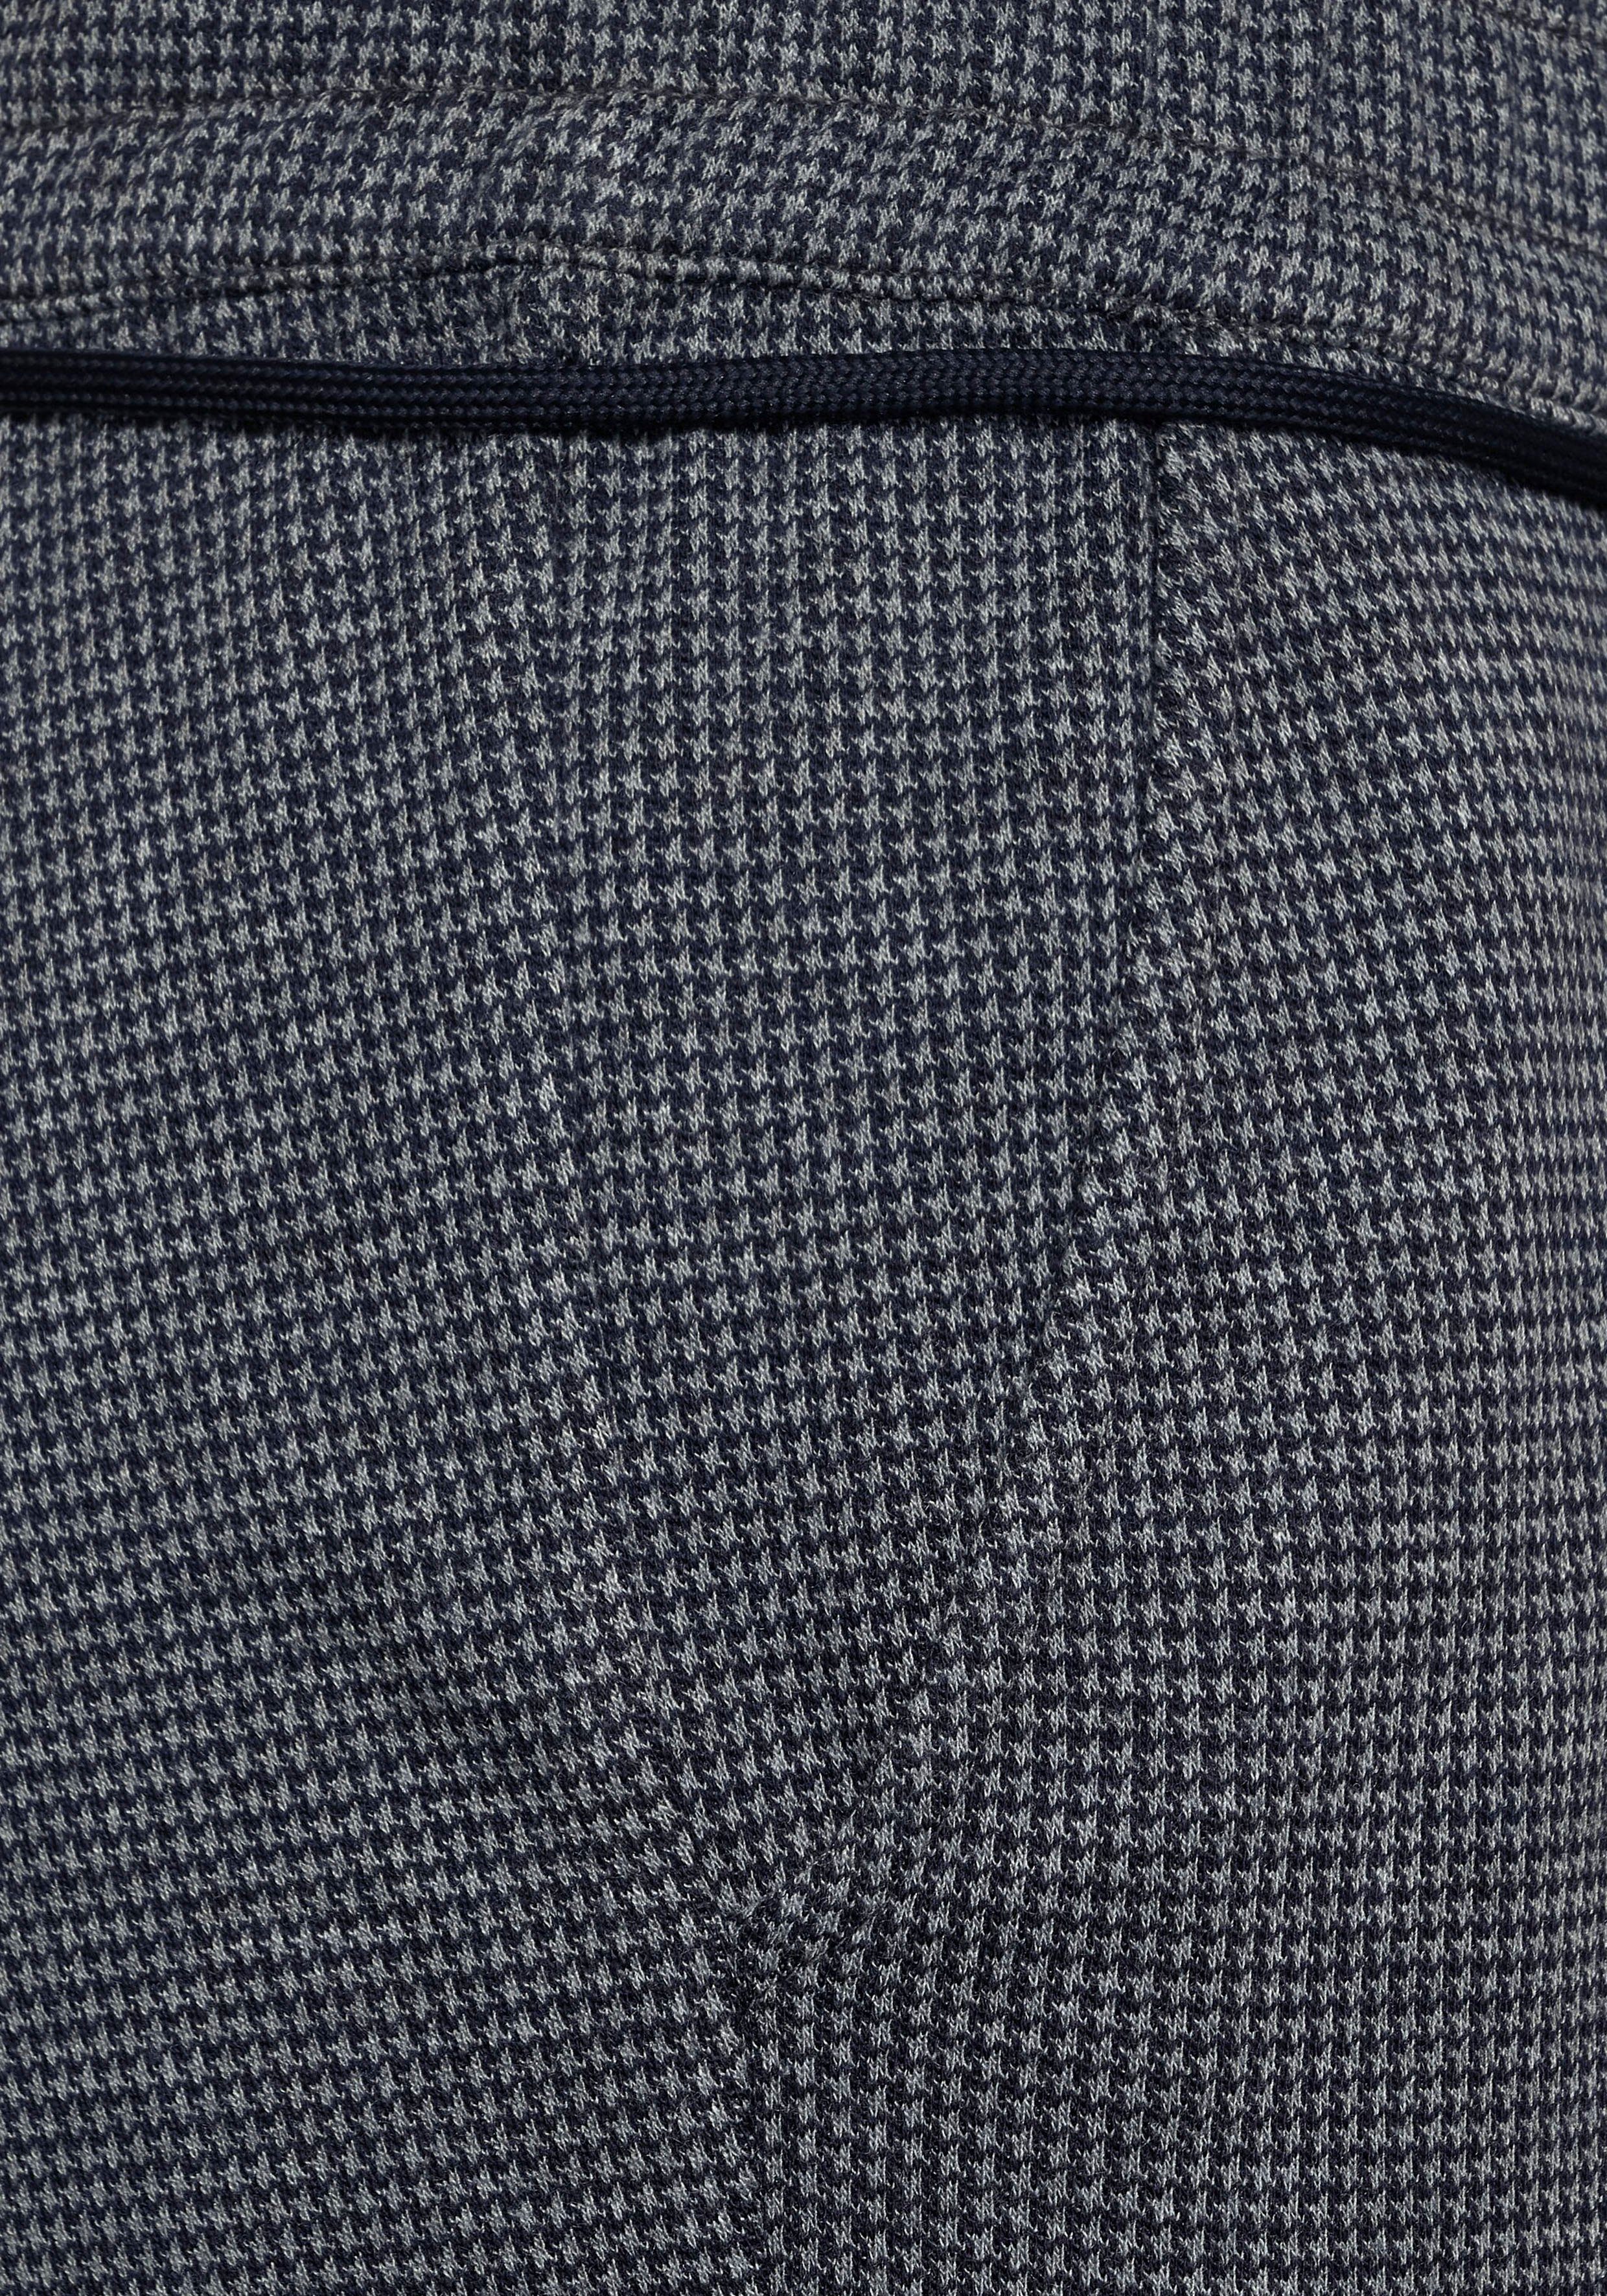 Damen Hosen Cecil 7/8-Hose Style Tracey mit modischem Pepita Muster